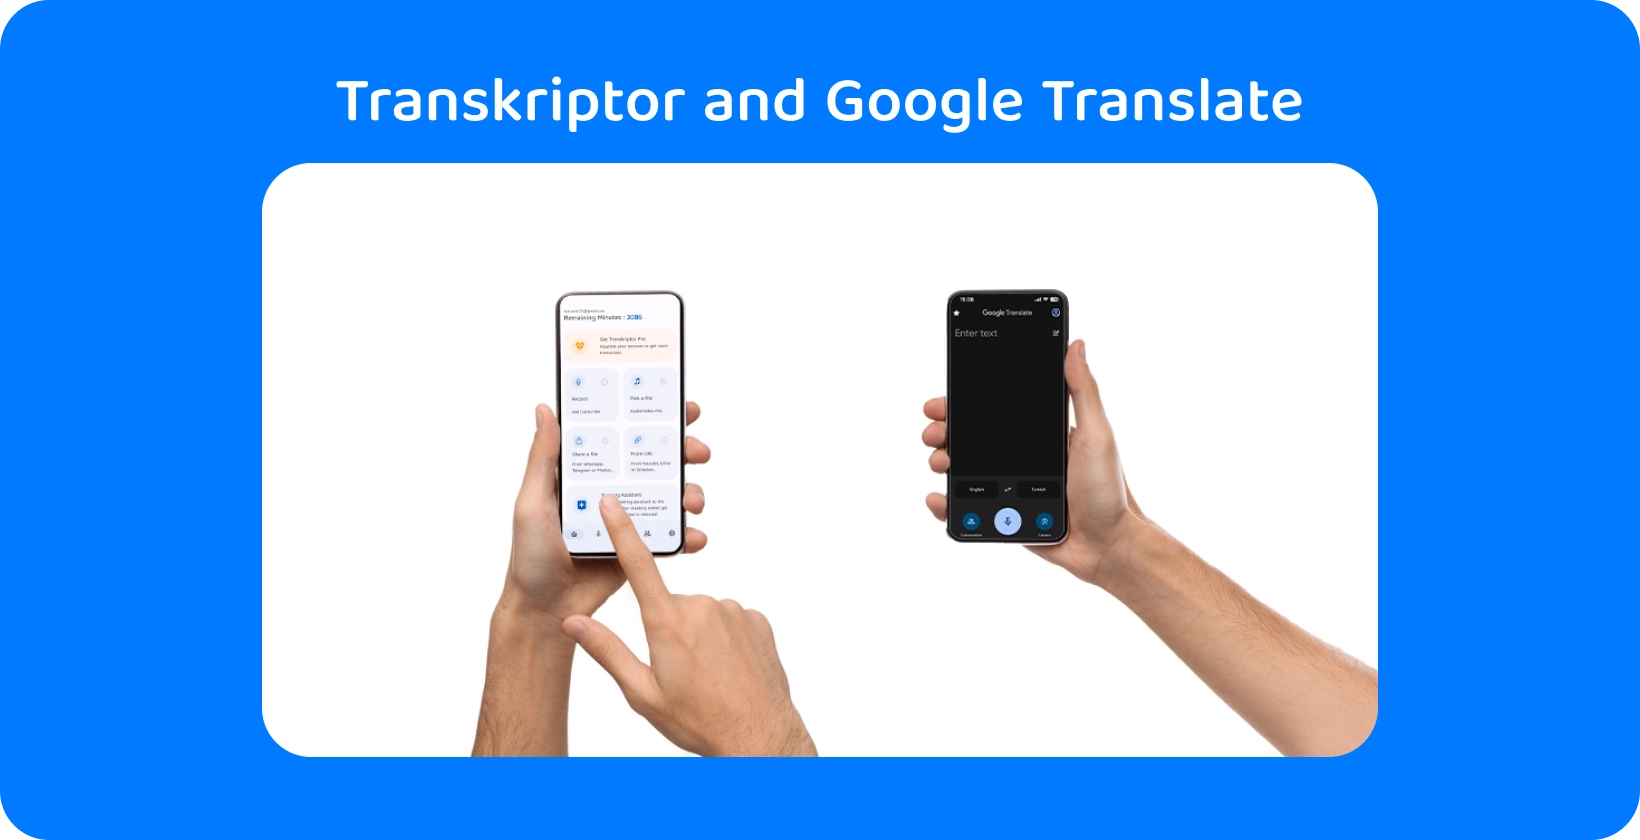 Divas rokas tur viedtālruņus ar Transkriptor un Google Translate, demonstrējot audio transkripciju un tulkošanu.